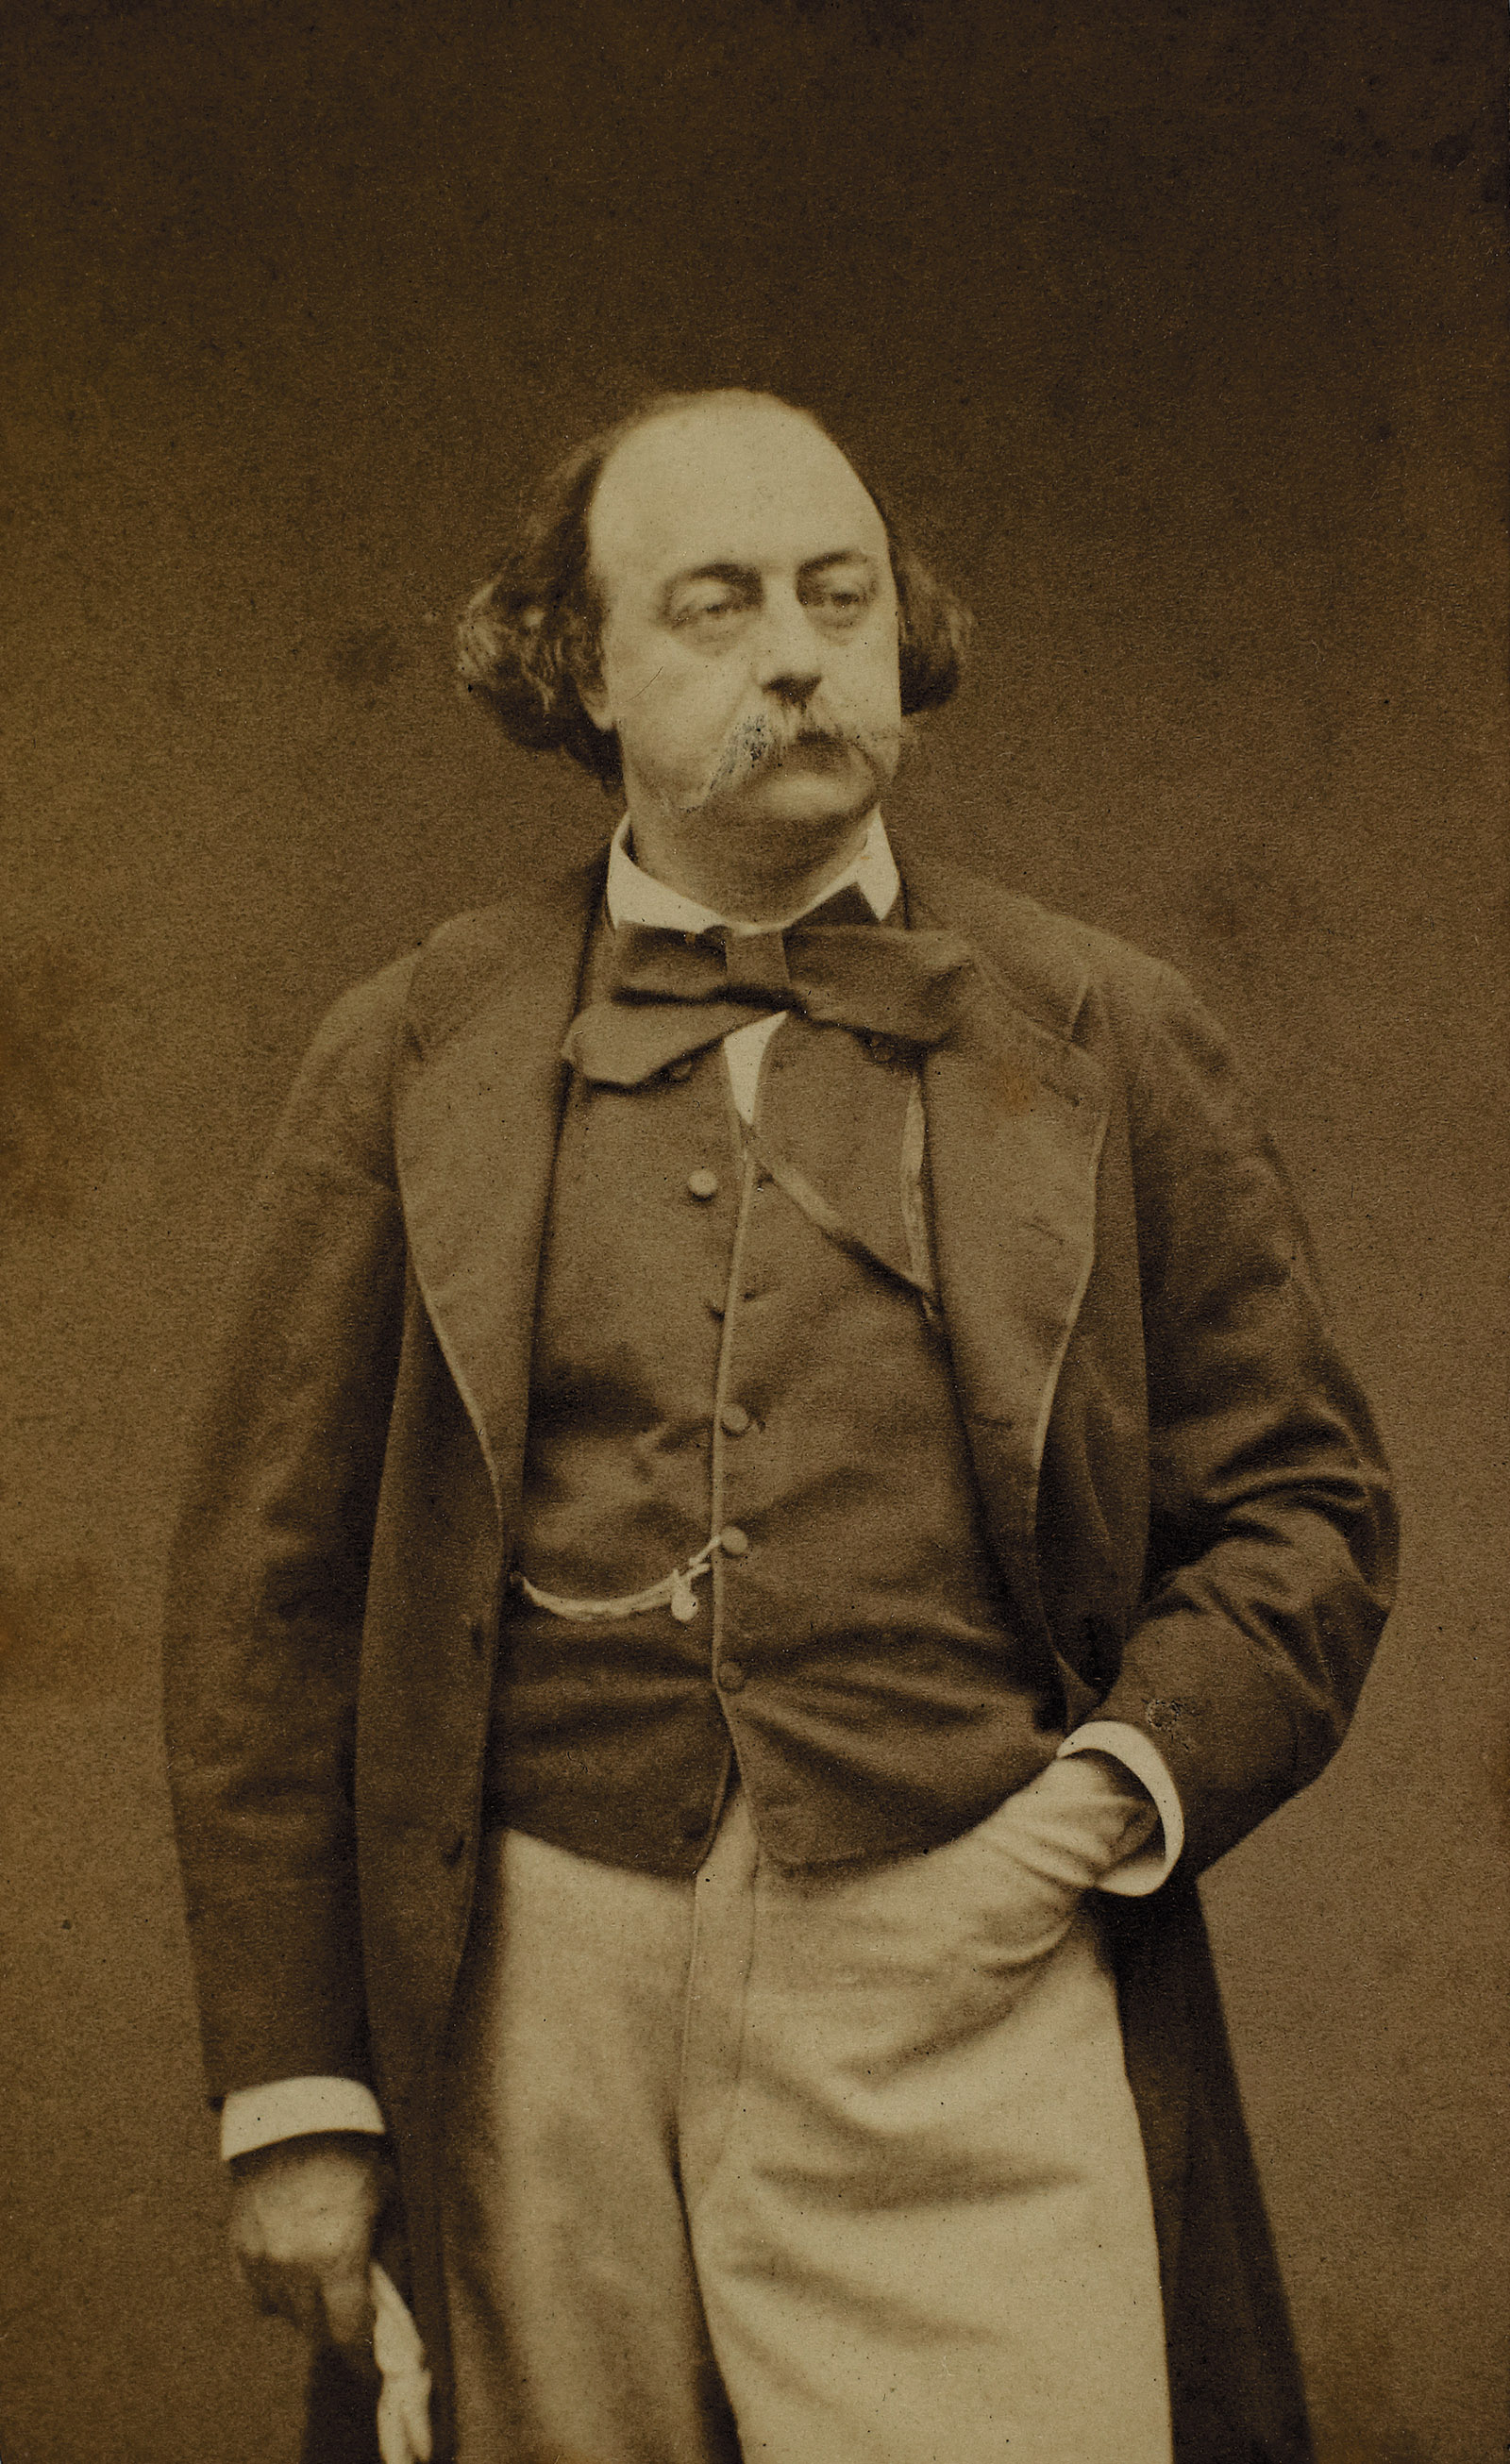 Gustave Flaubert, circa 1860; carte-de-visite portrait by Étienne Carjat